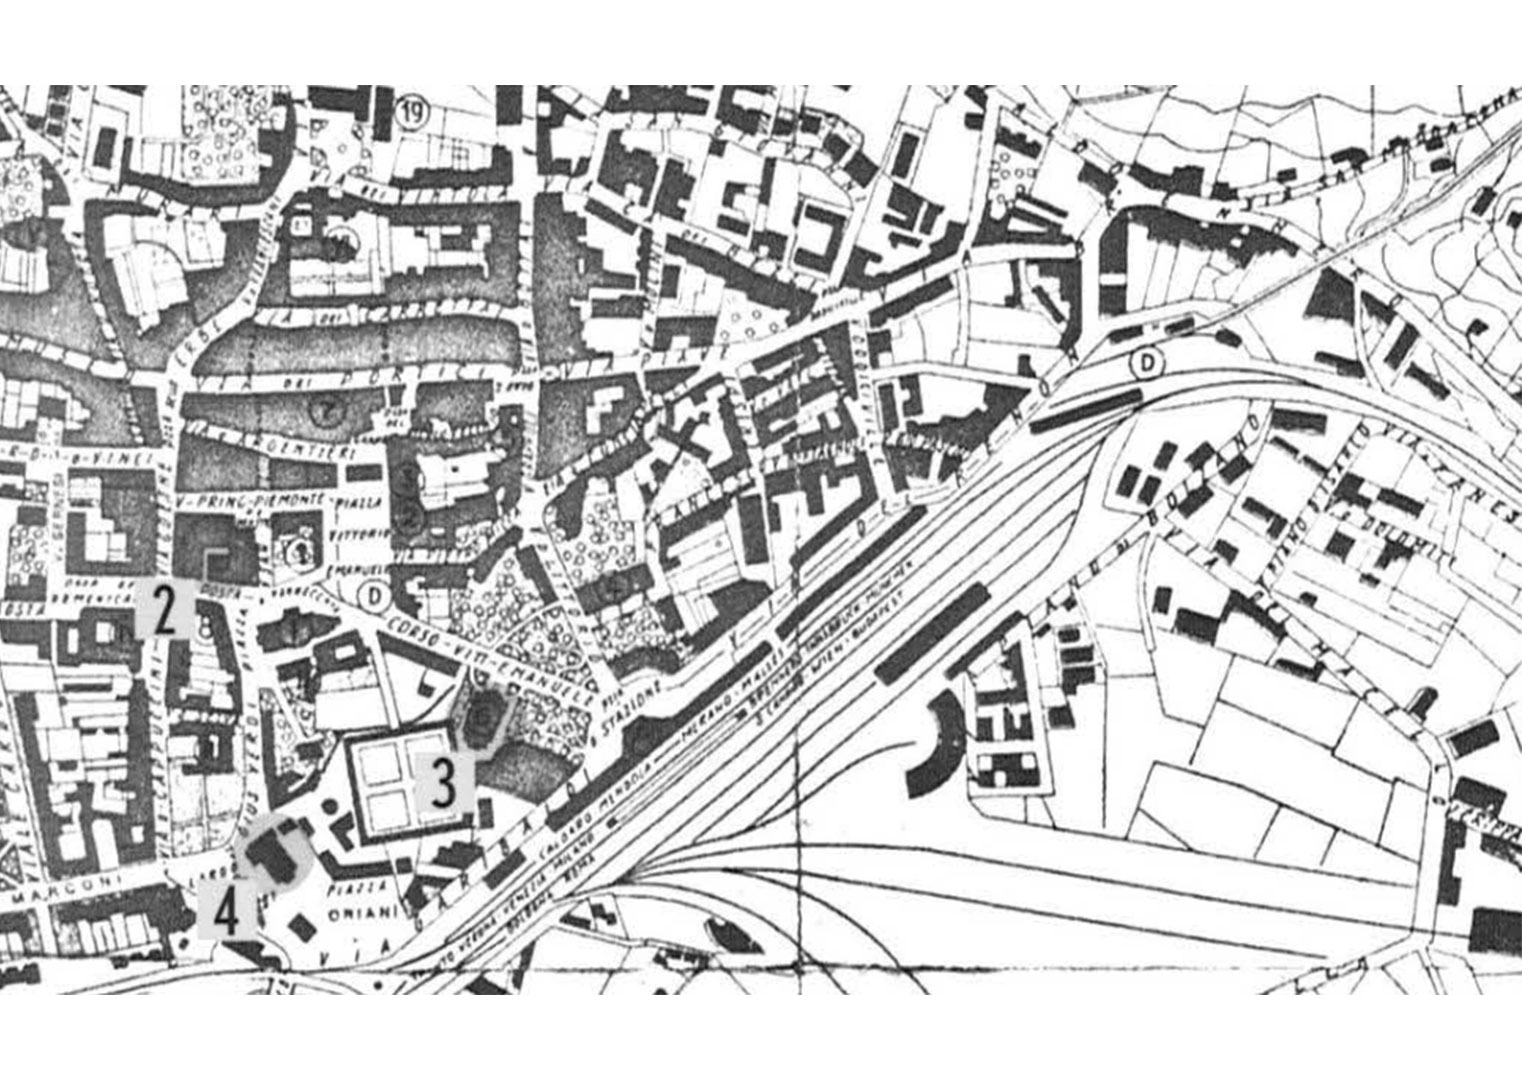 old city plan from 1932 https://www.comune.bolzano.it/download/PRU/ACCORDO_PROGRAMMA/11)%20-%20PRU%20A%20-%20RELAZIONE%20ILLUSTRATIVA.pdf